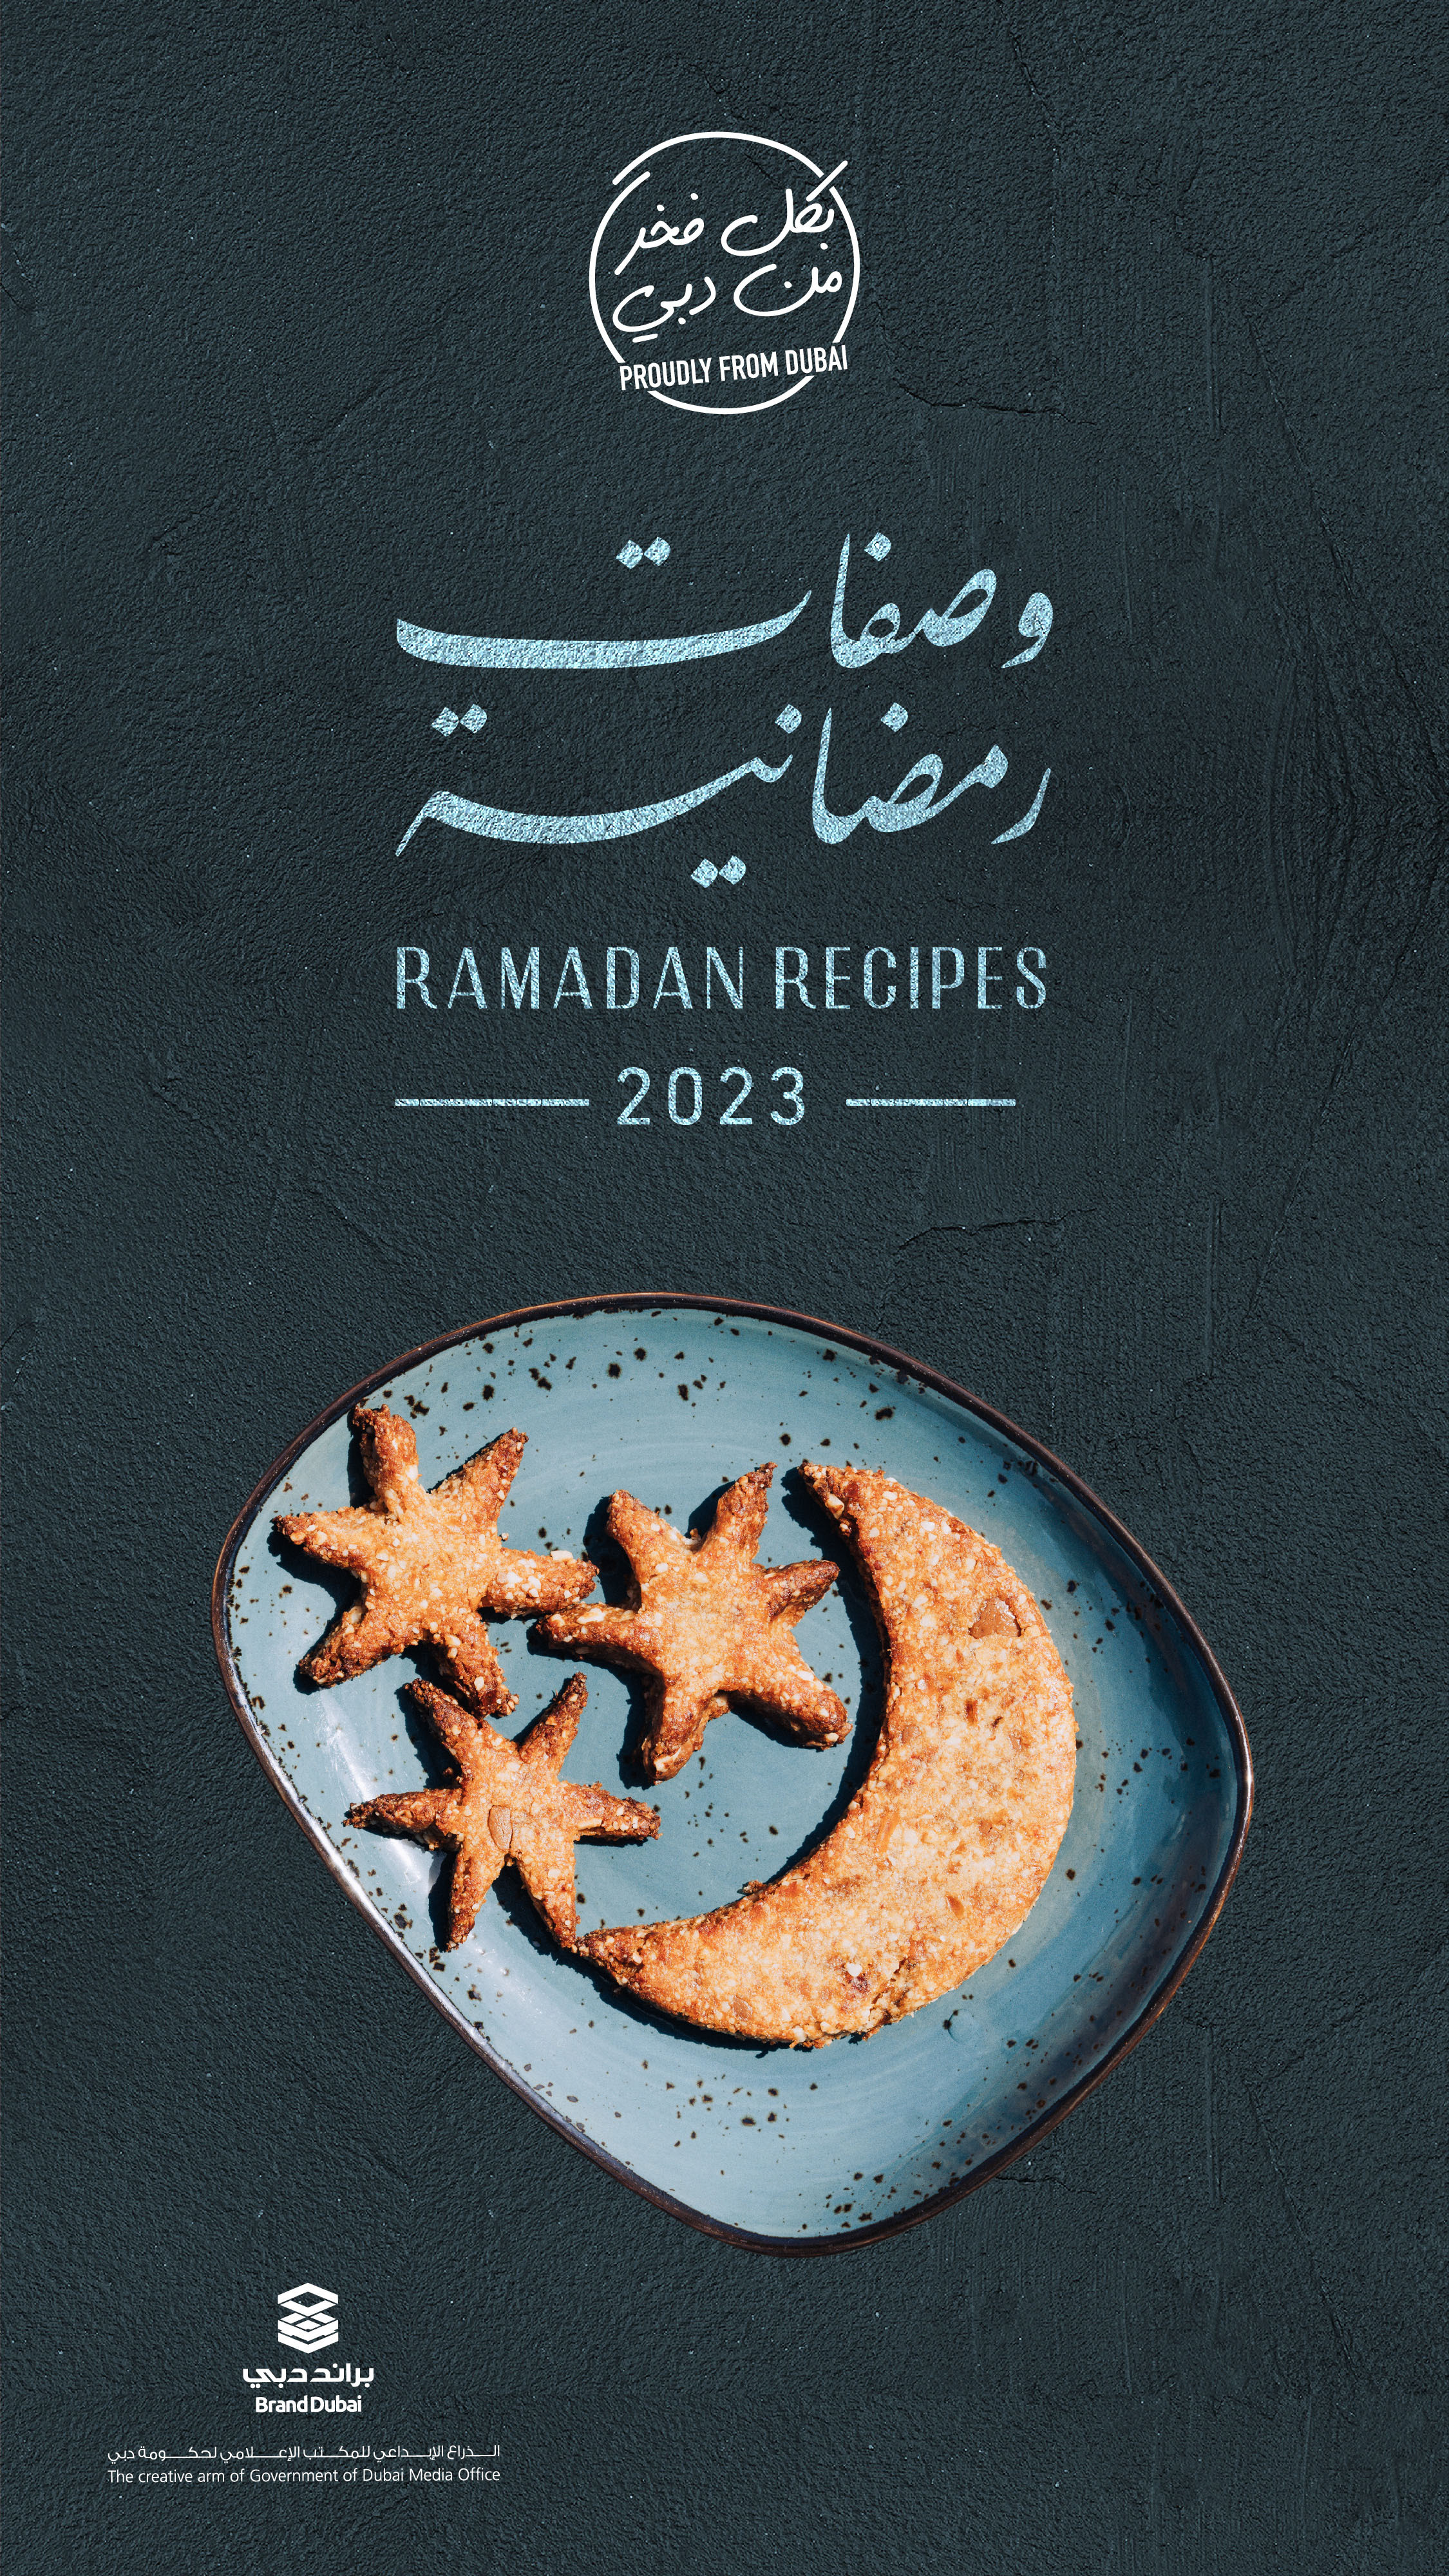 براند دبي يطلق النسخة الرابعة من دليل "وصفات رمضان"
